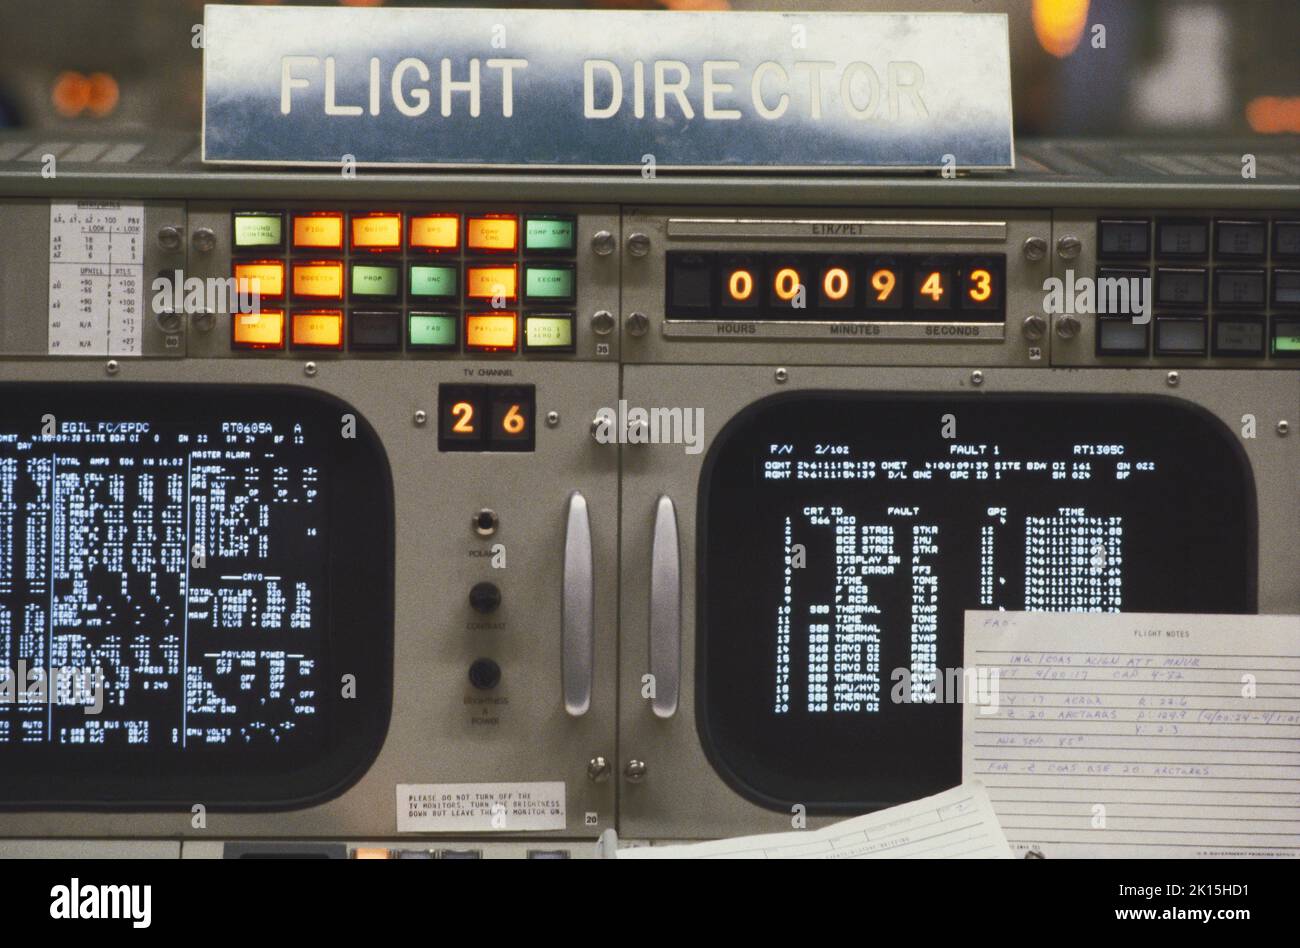 Una mirada a la sala de control de misiones de la NASA en el Centro Espacial Johnson, también conocido por su indicativo, 'Houston'. Aquí, un vistazo más de cerca a las pantallas de vídeo en la consola de Flight Director, durante una simulación de una misión espacial. Foto alrededor de 1985. Foto de stock